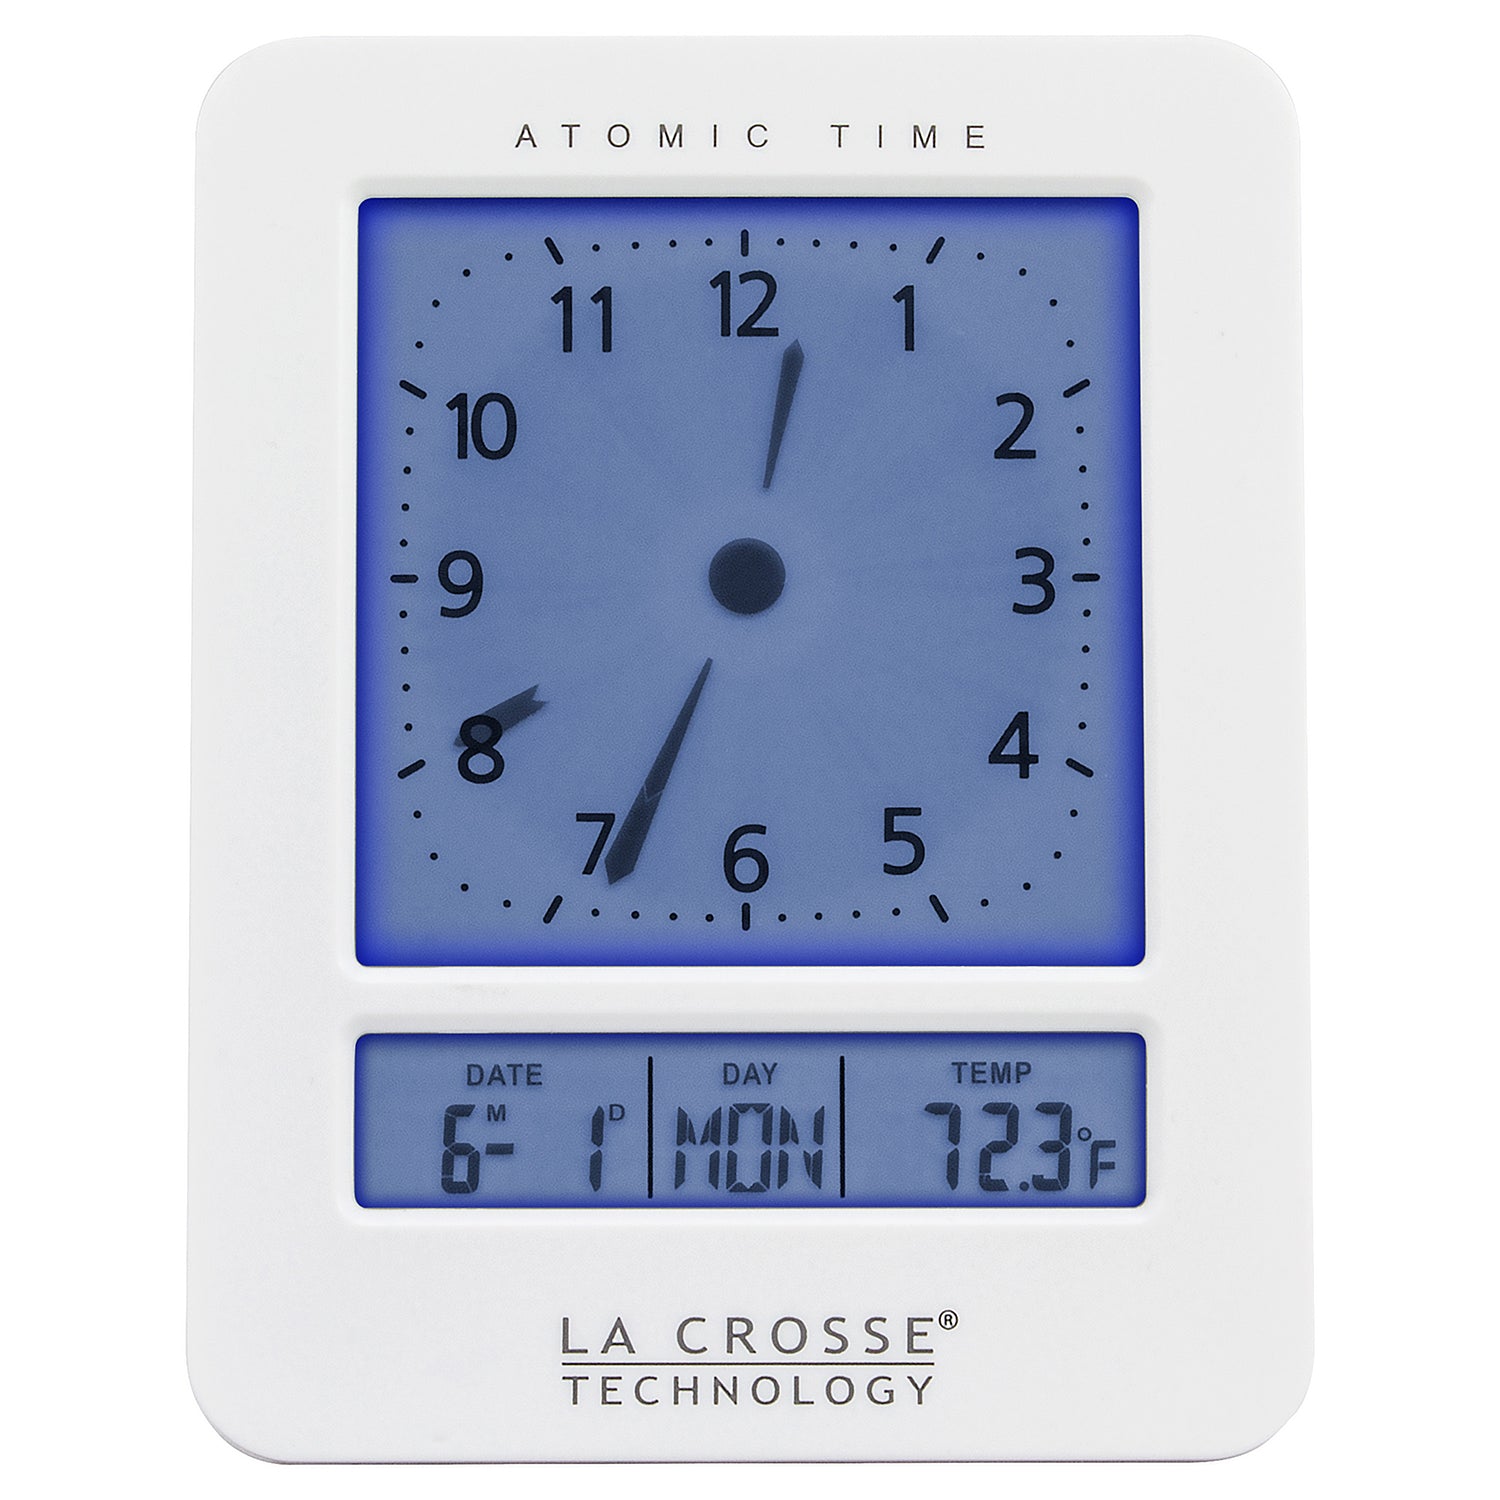 How to Use an Analog Alarm Clock – Cloudnola